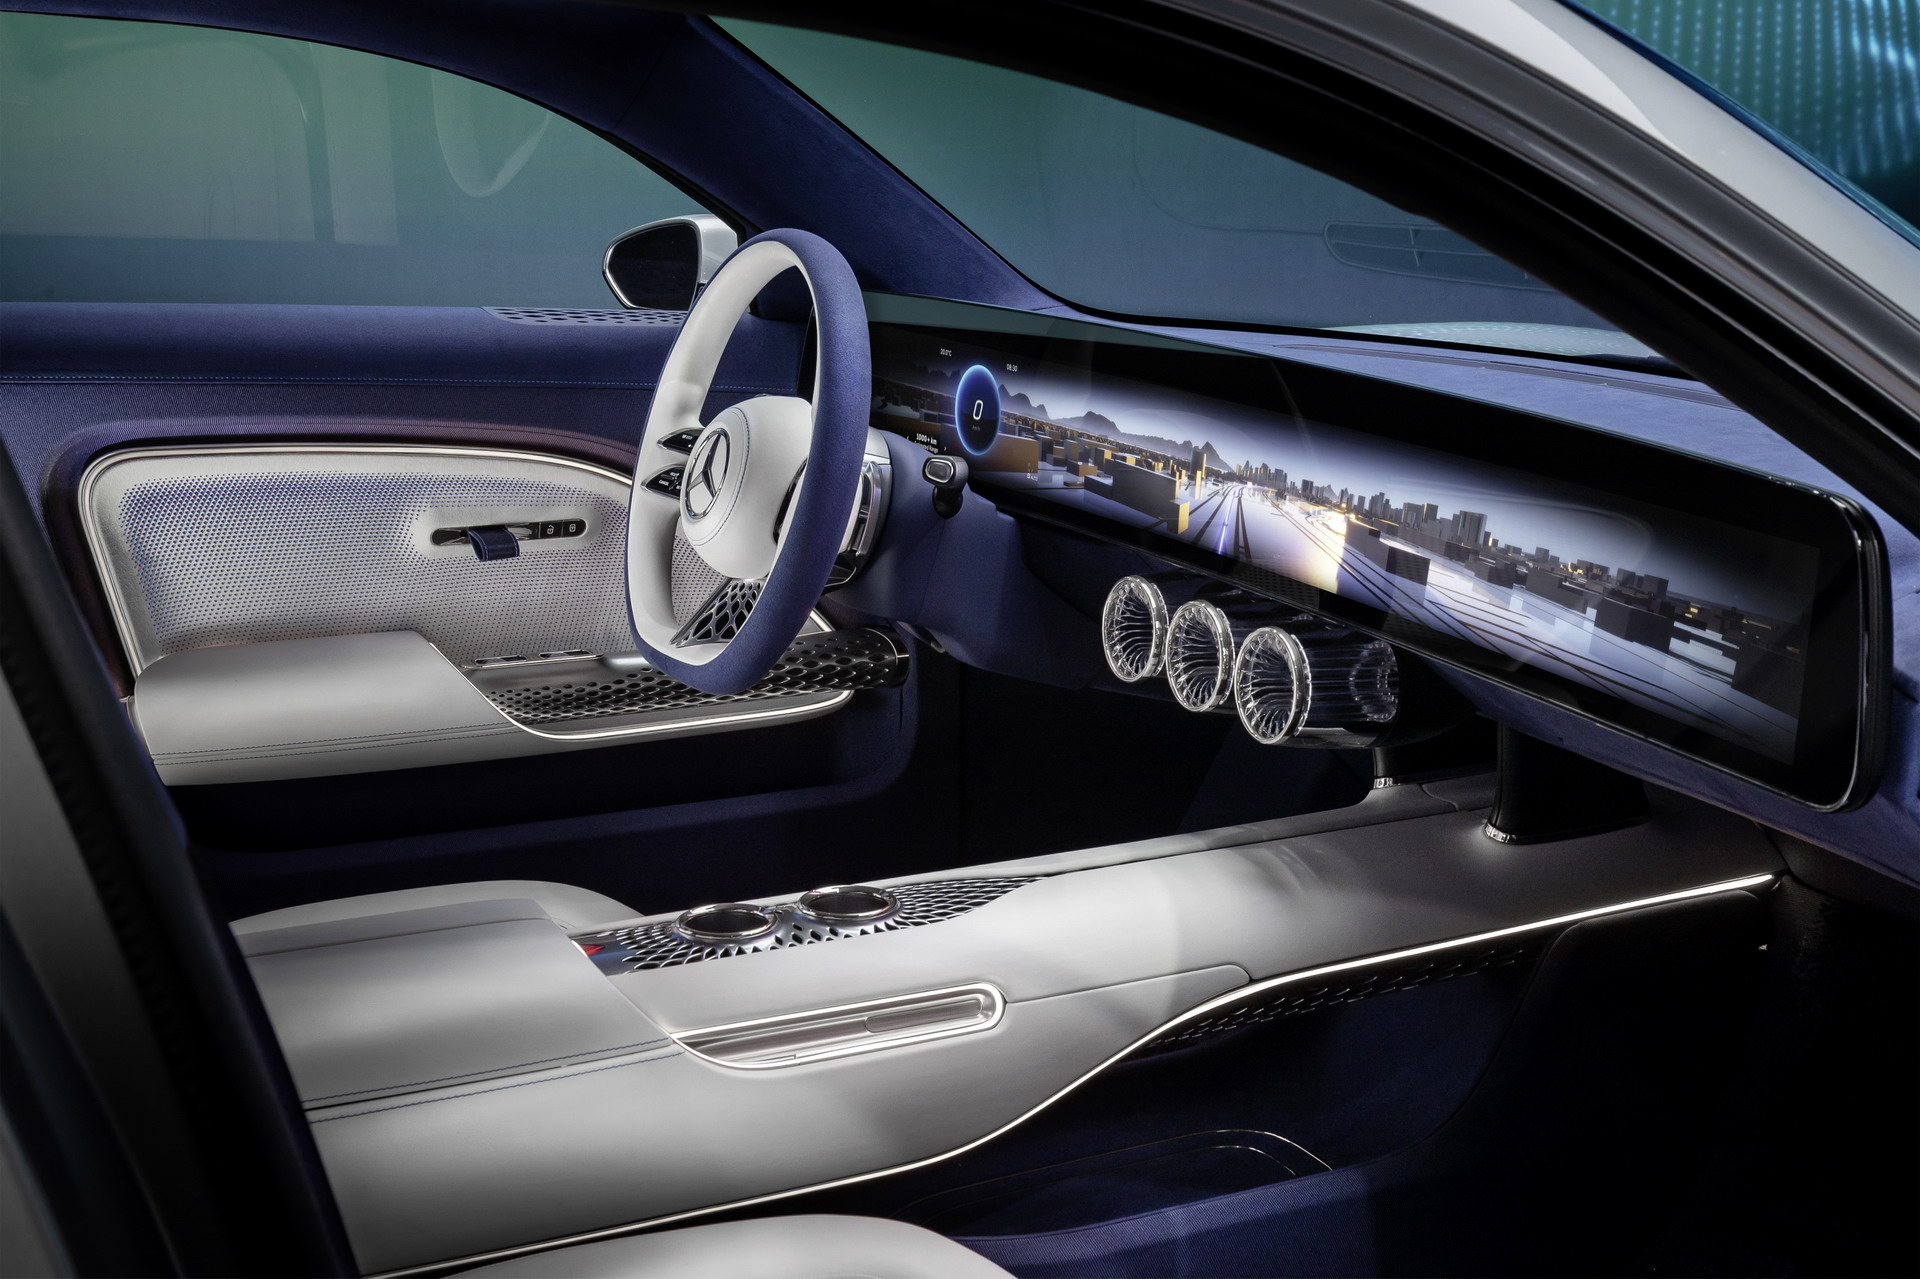 Siêu phẩm Mercedes-Benz sẽ nằm cùng sàn trưng bày 3 xe VinFast mới: Màn hình cảm ứng siêu rộng, sạc một lần chạy 1.000 km - Ảnh 8.